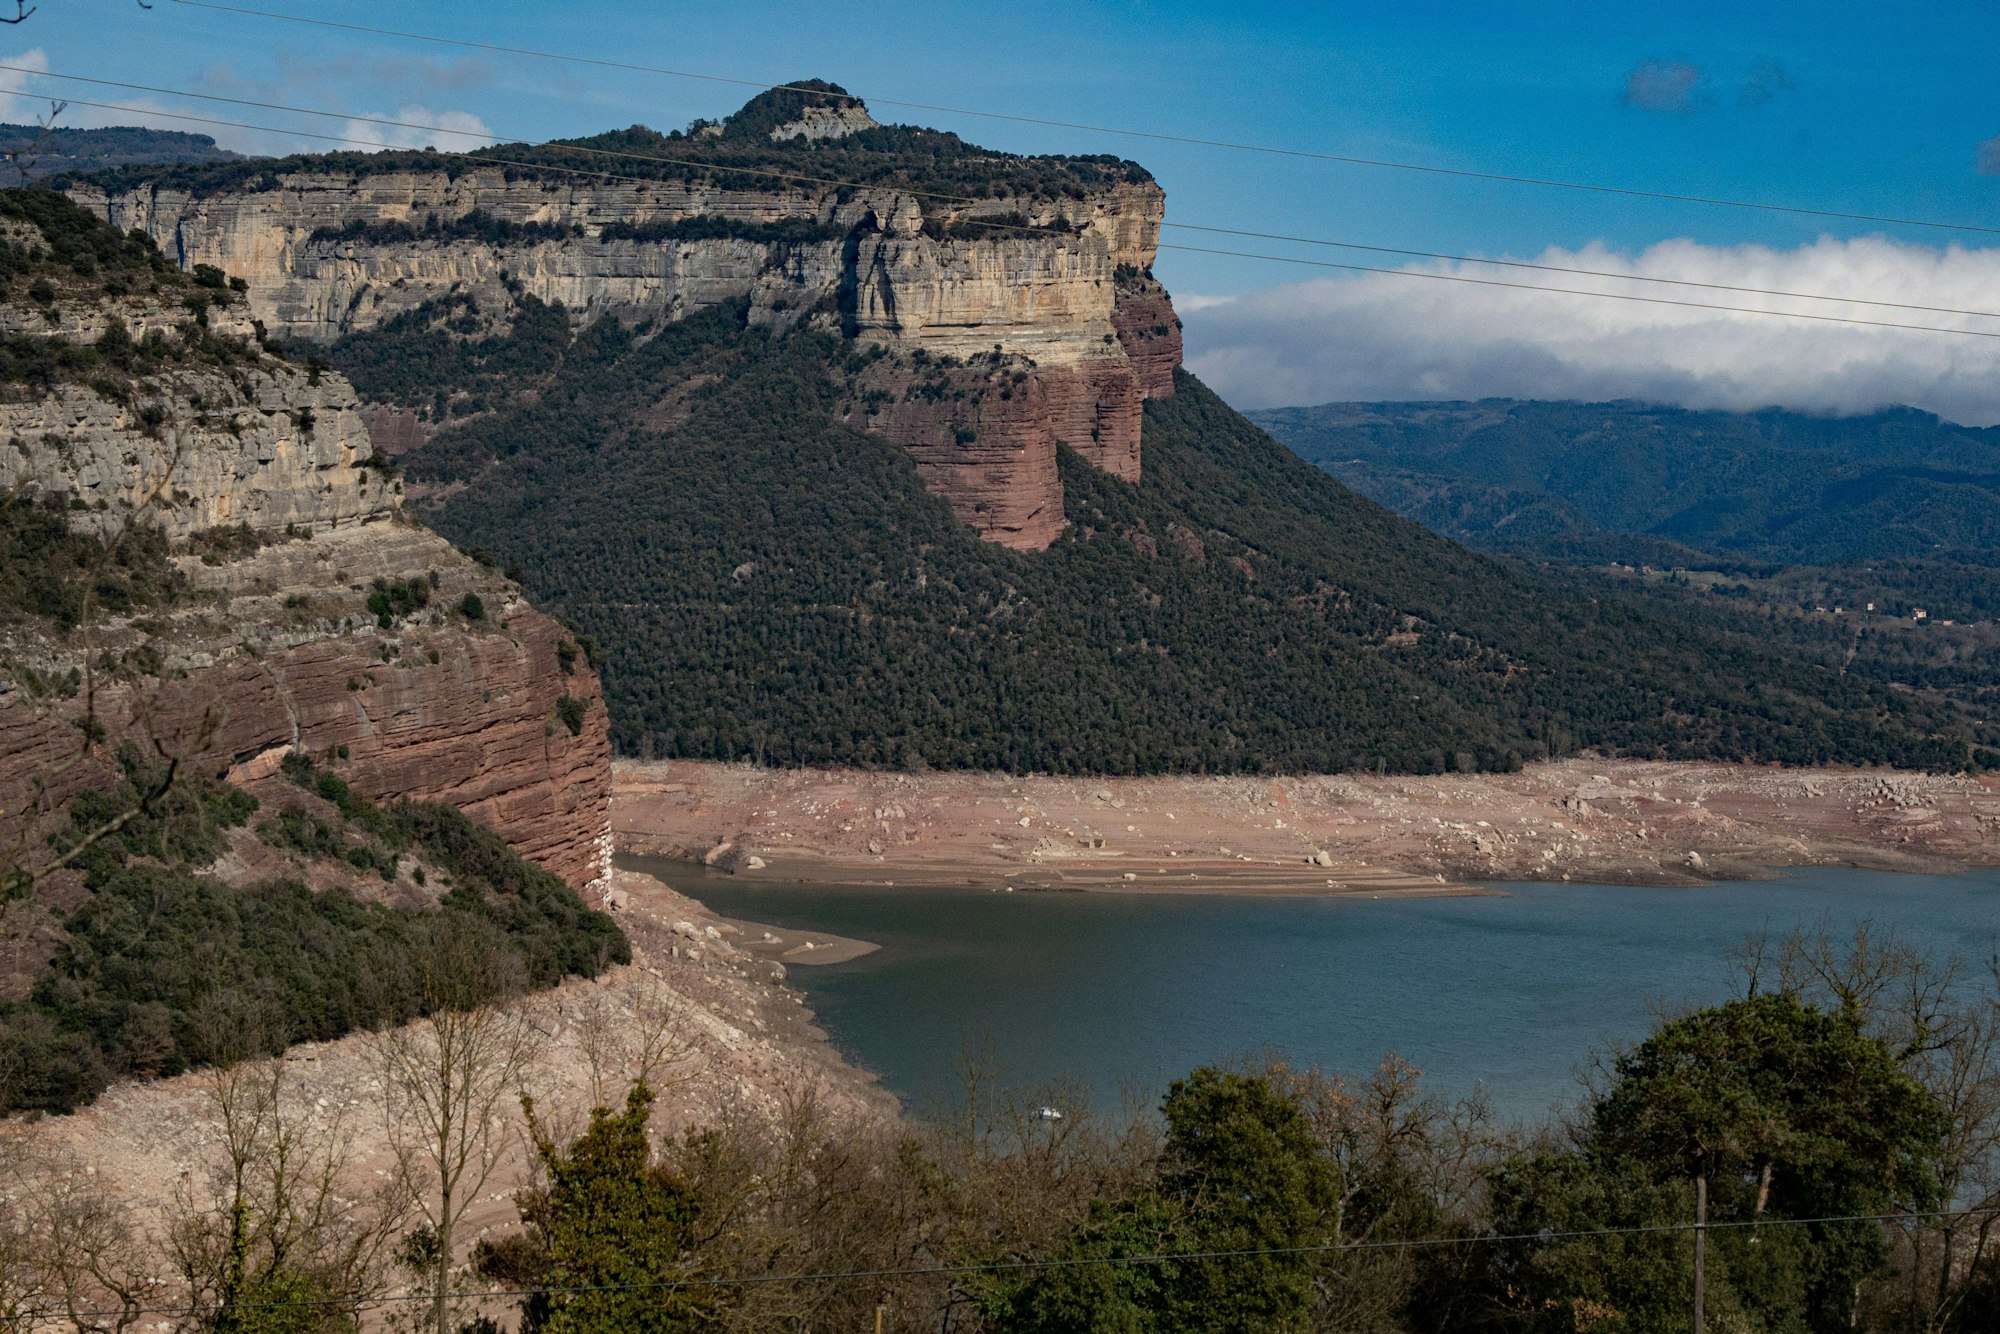 Spanien, Sau: Blick auf den Sau-Stausee in Katalonien, wo der Wasserstand aufgrund der Dürre in der Region sehr niedrig ist.